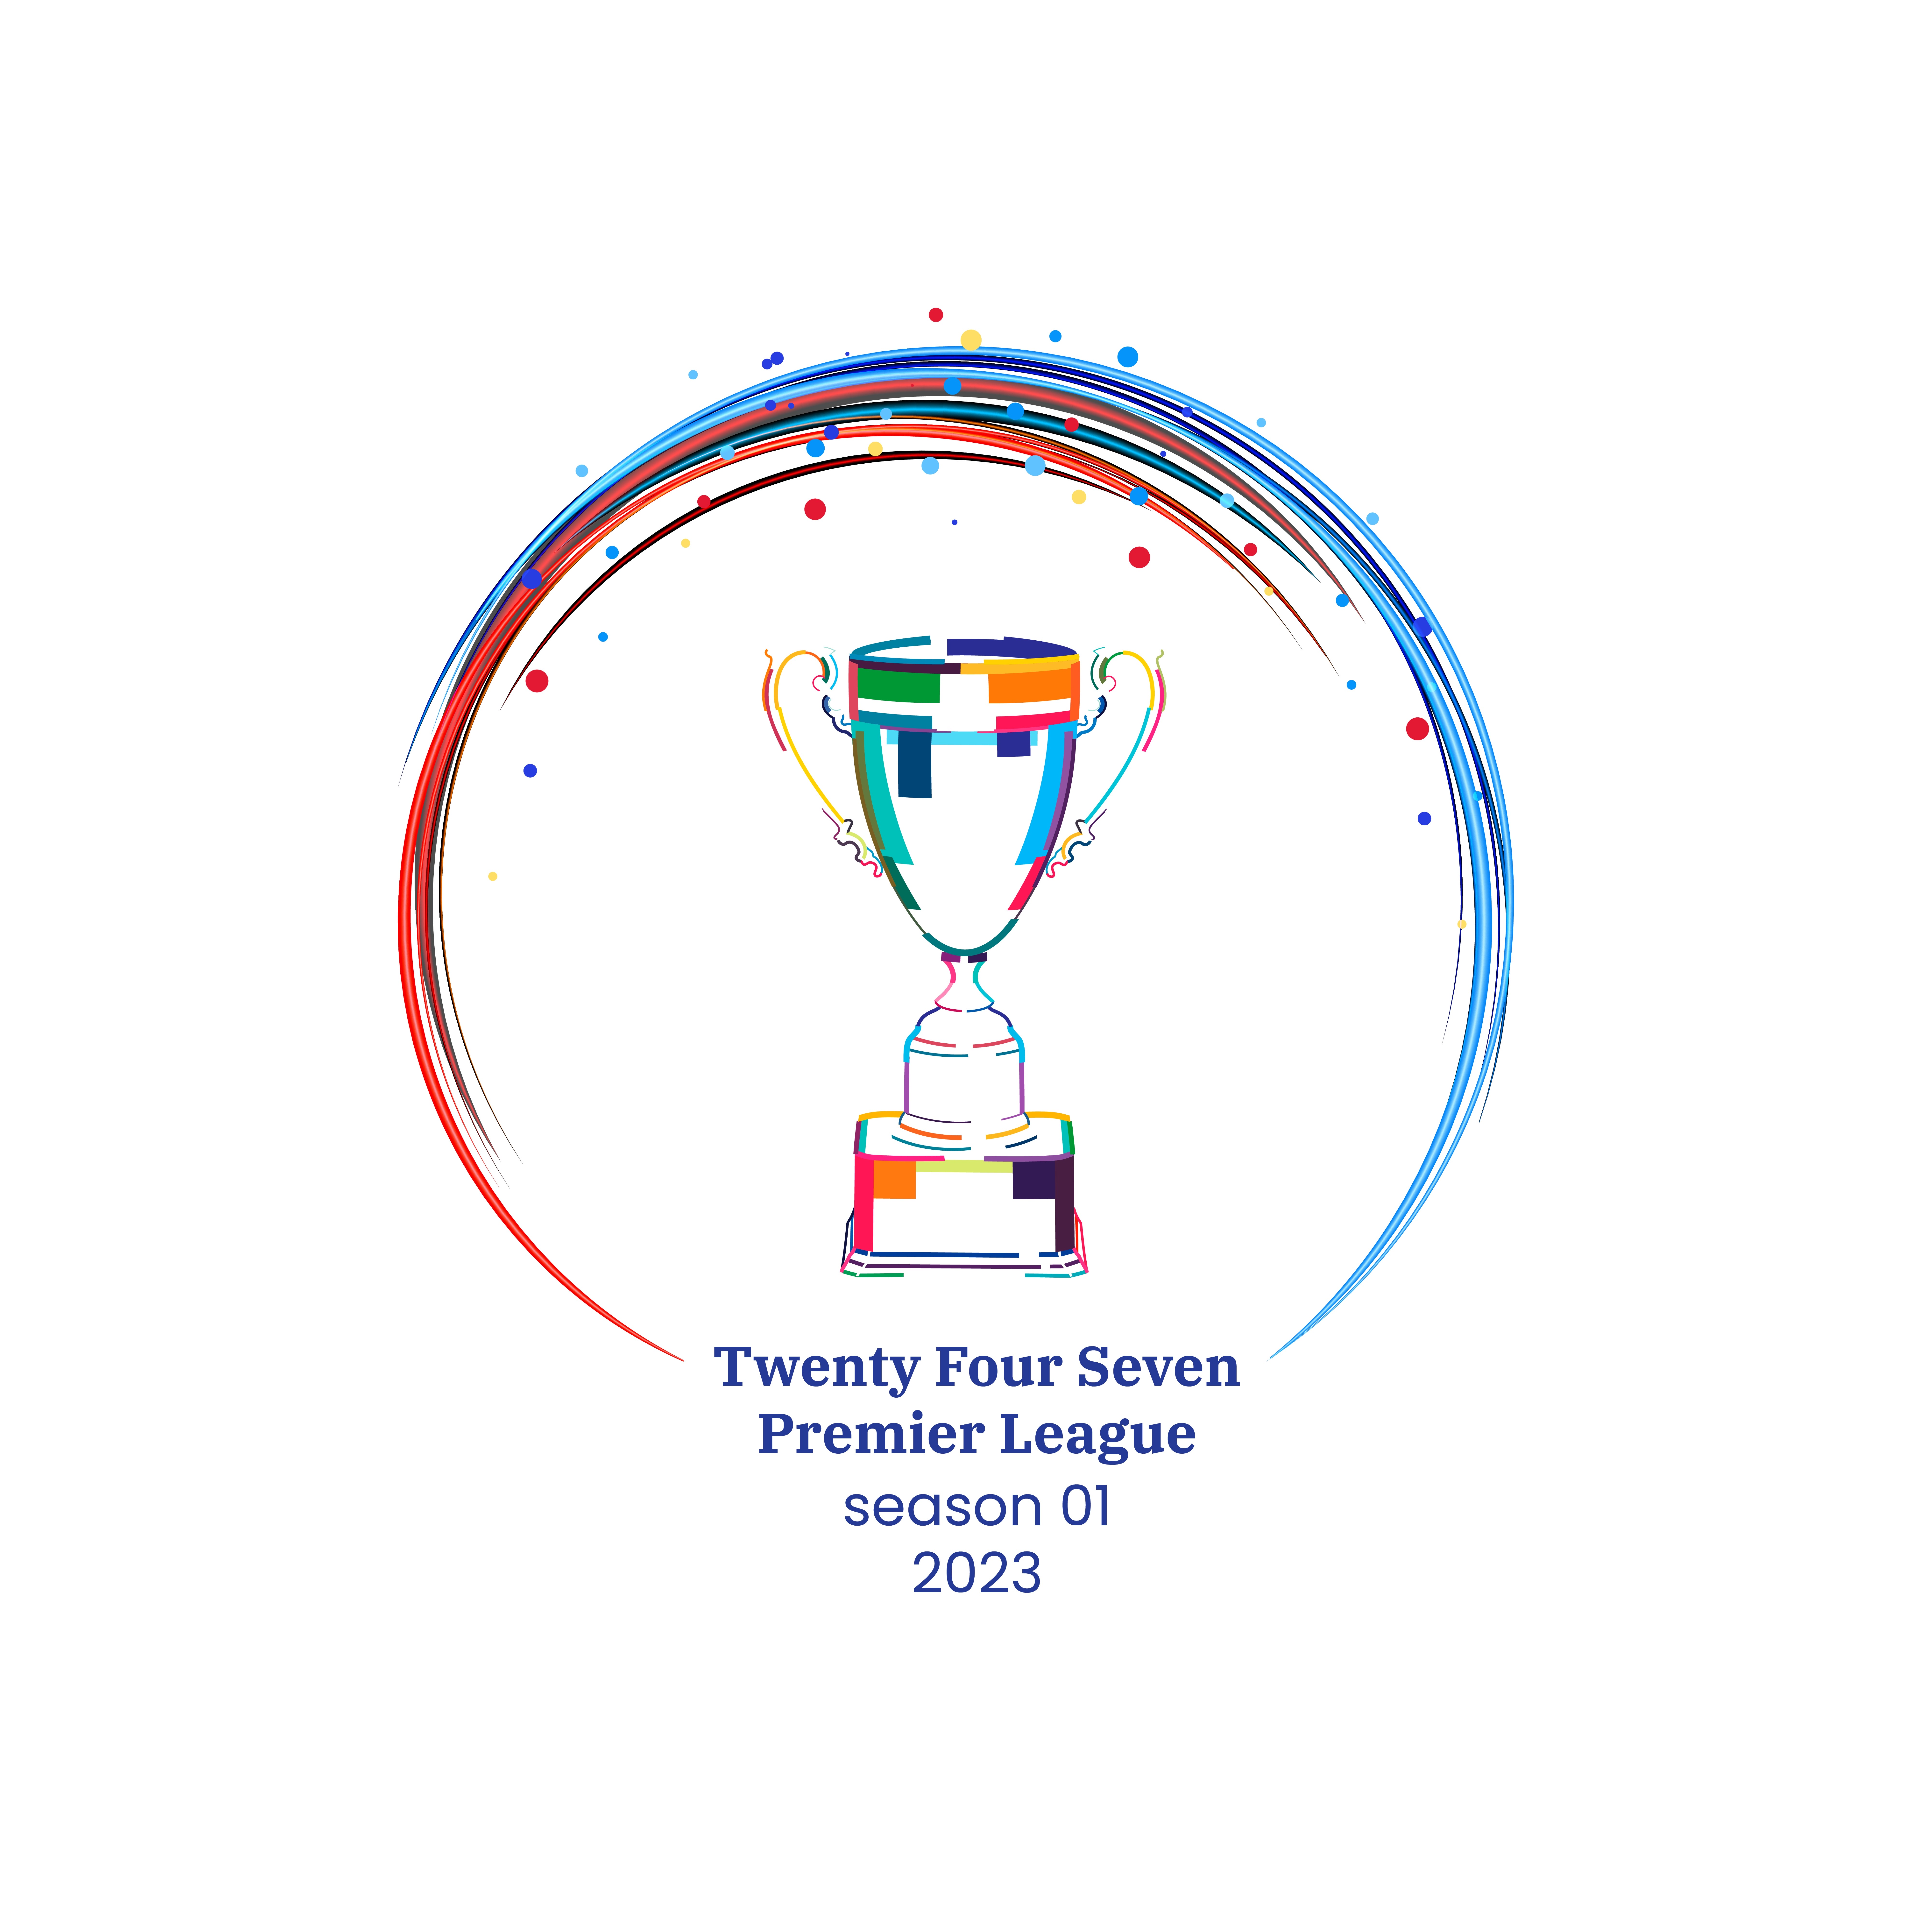 TFS Premier League